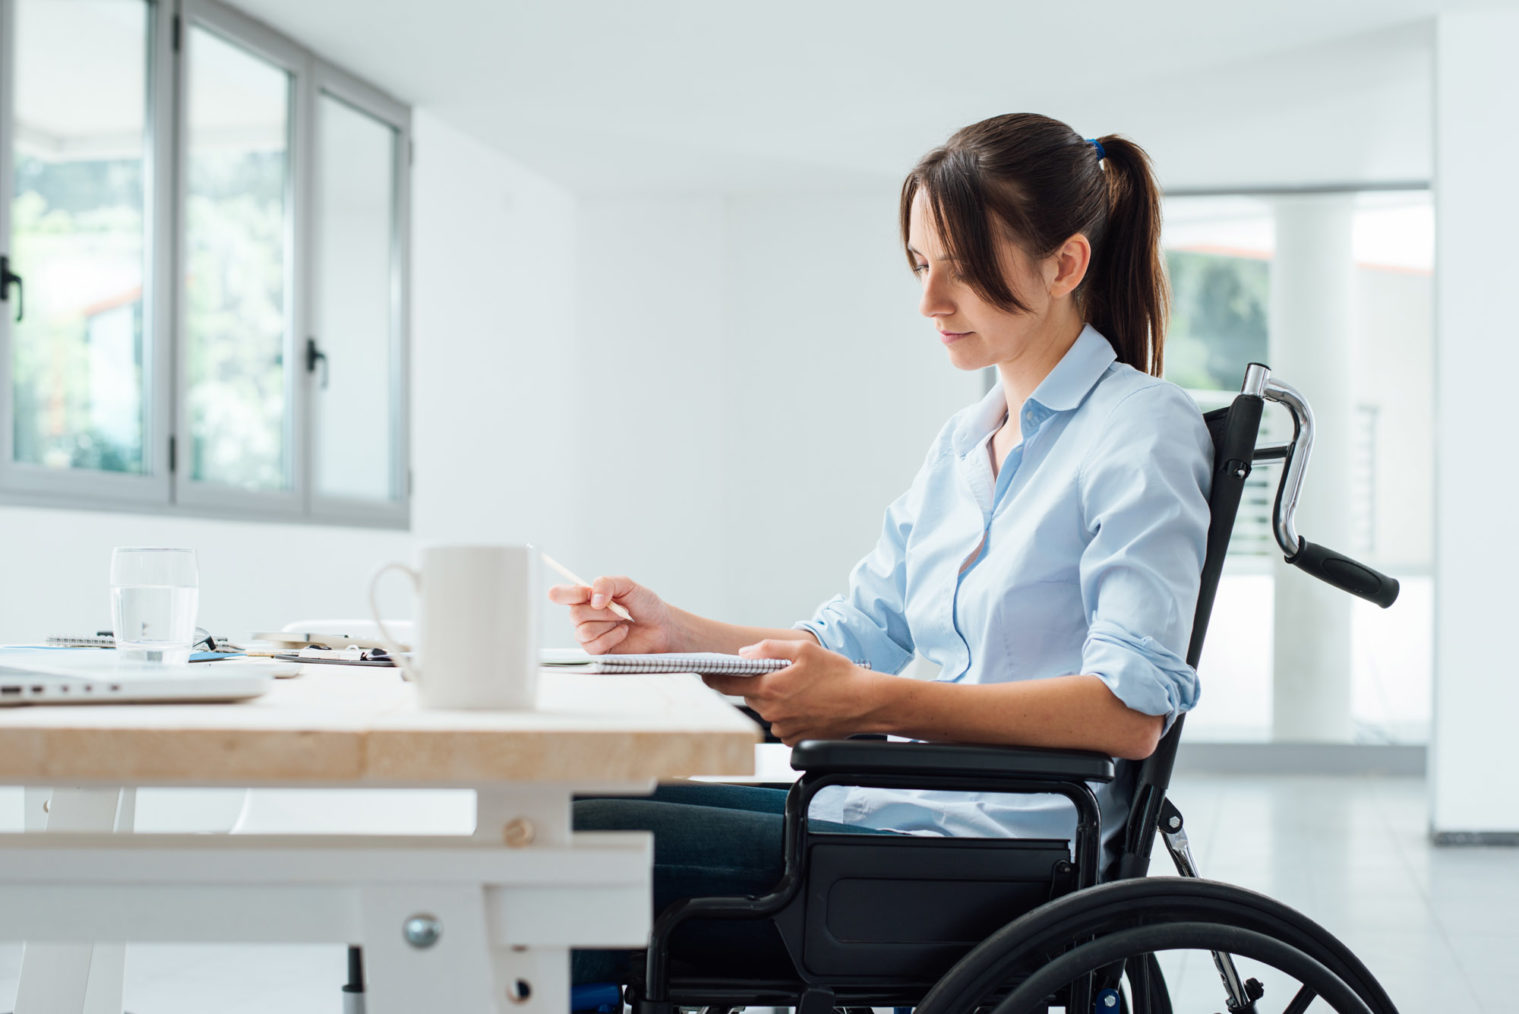 Bilde av ung kvinne i rullestol som driver med kontorabeid.